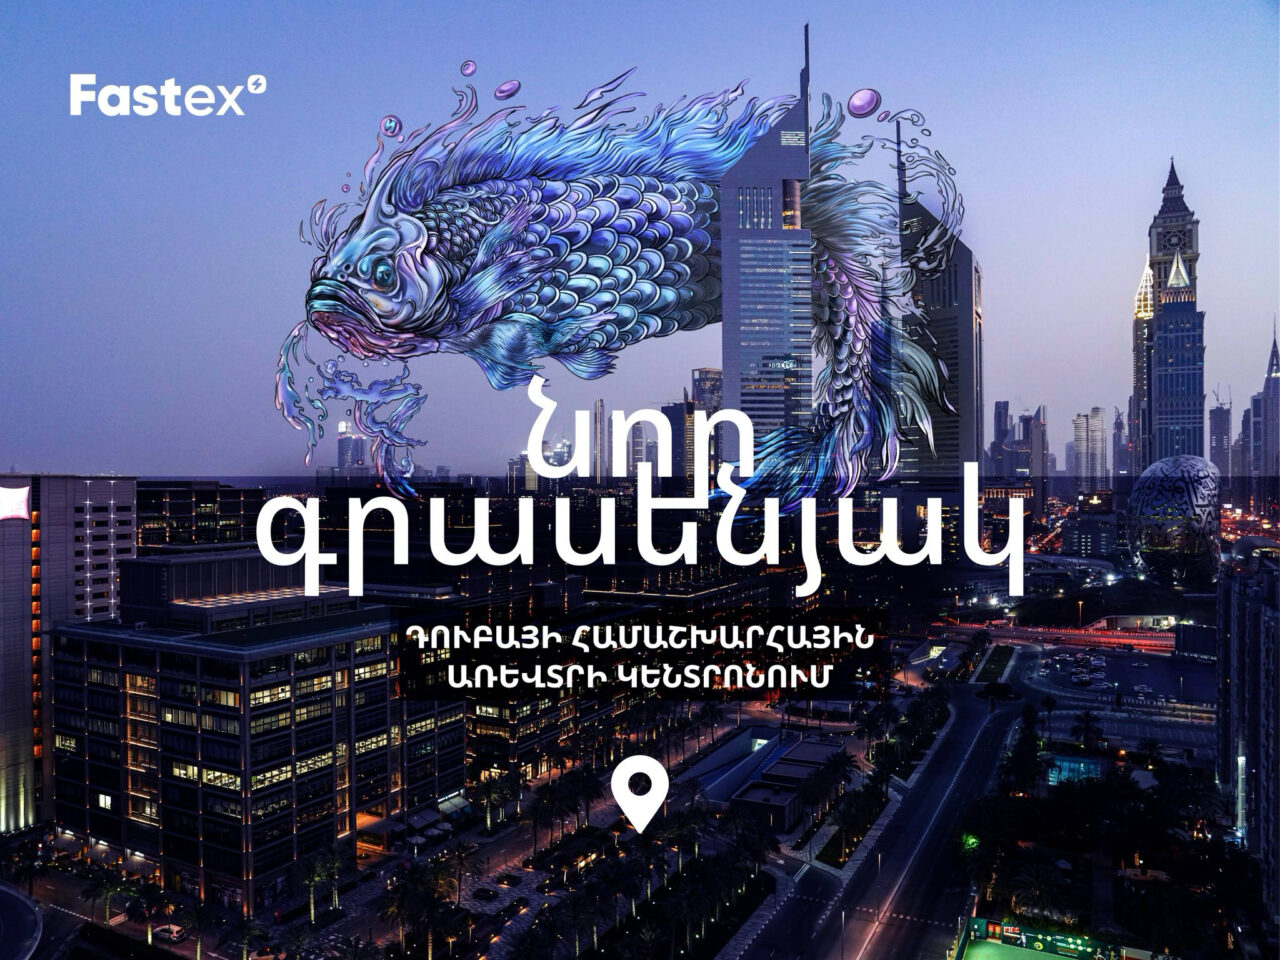 Fastex-ը նոր գրասենյակ է բացել Դուբայի համաշխարհային առևտրի կենտրոնում՝ One Central-ում